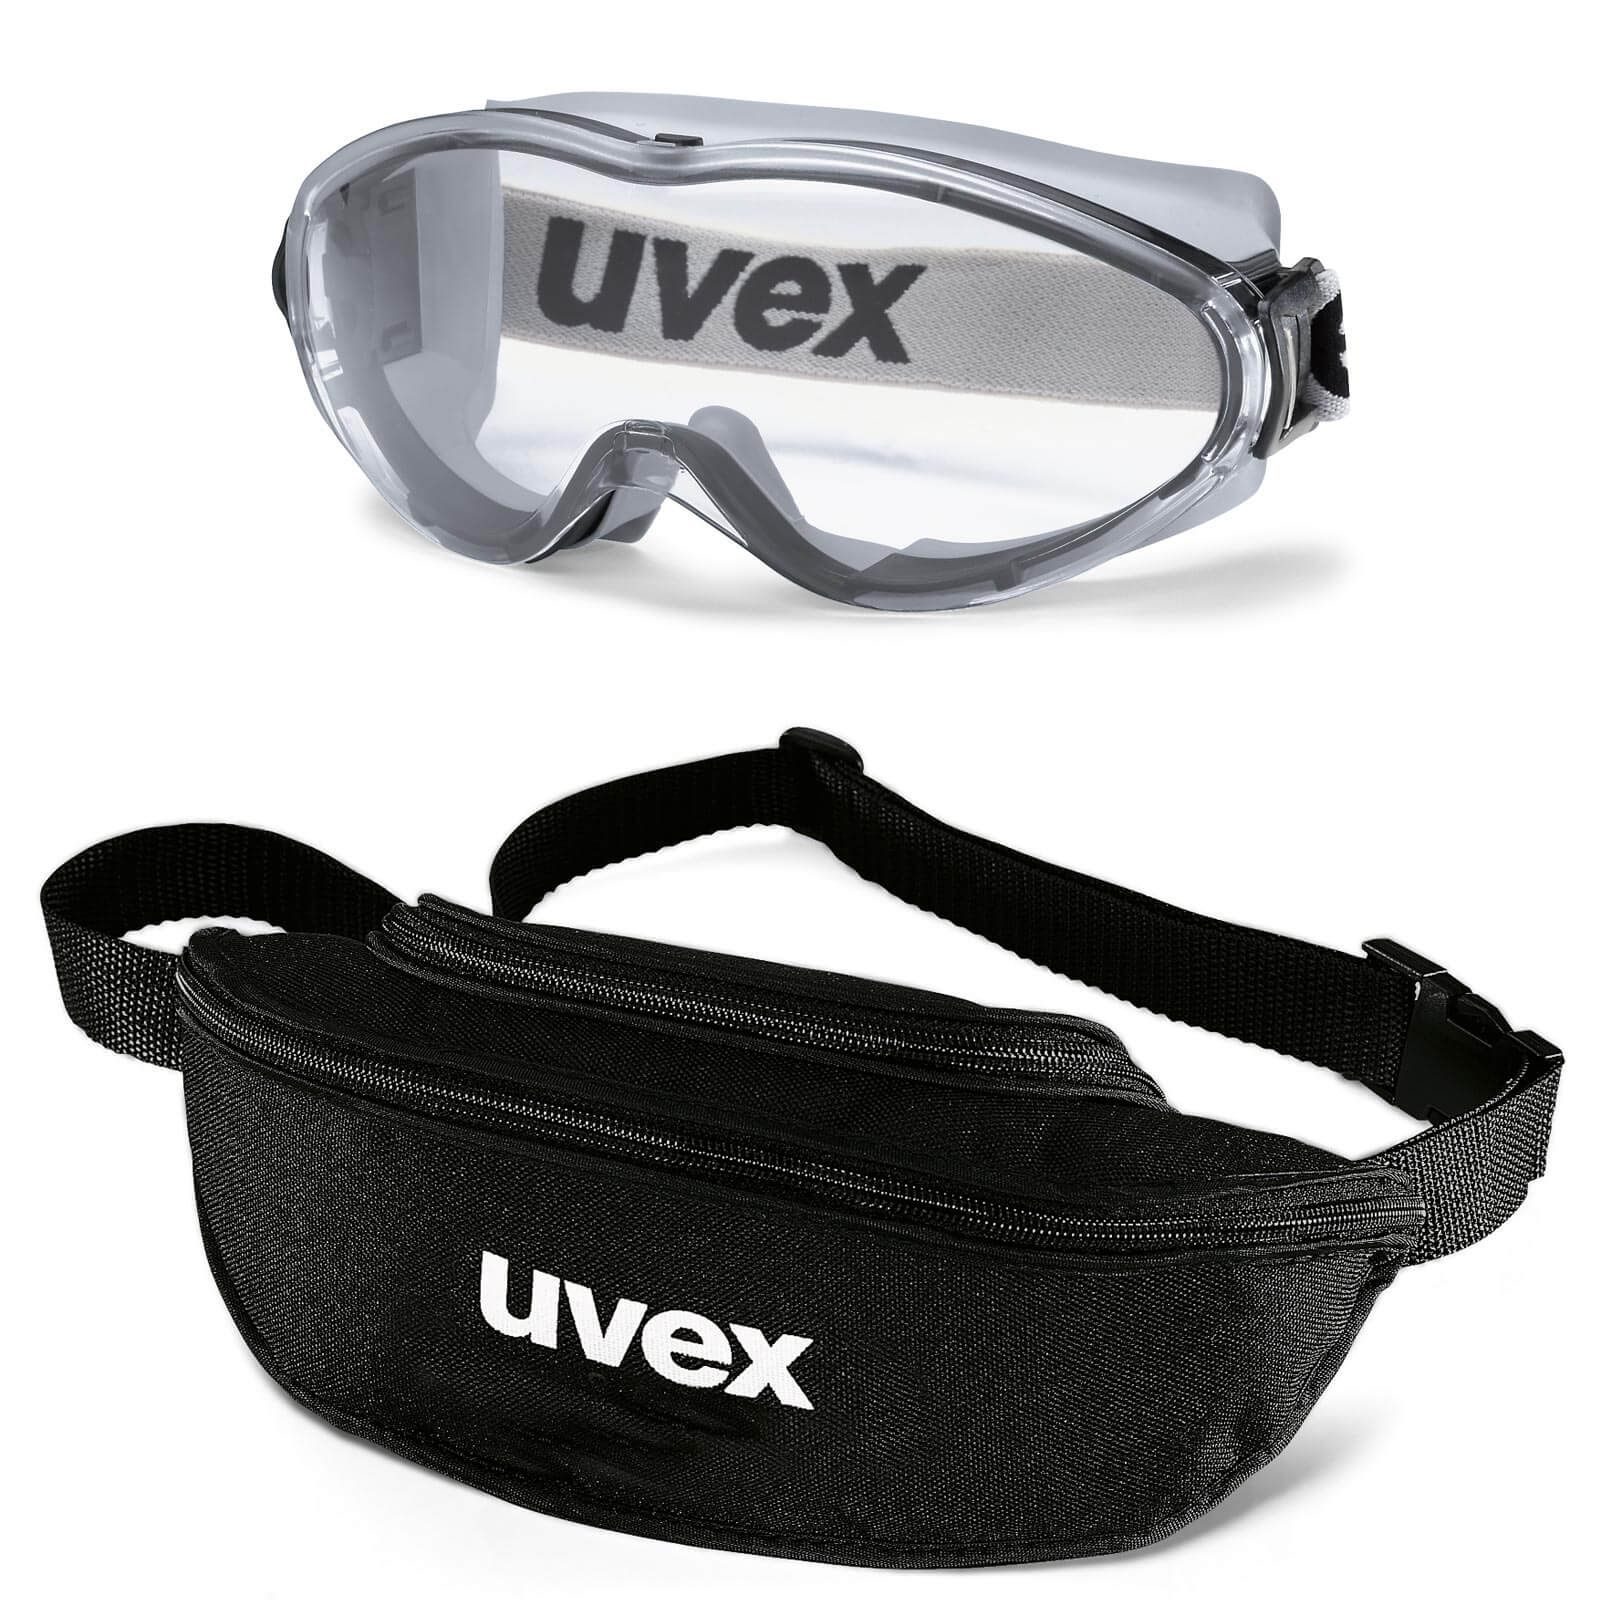 UVEX Vollsichtbrille ultrasonic 9302 - Set inkl. Textil-Etui - 9302285 / 9302245 Farbe:grau-schwarz / klar von Uvex